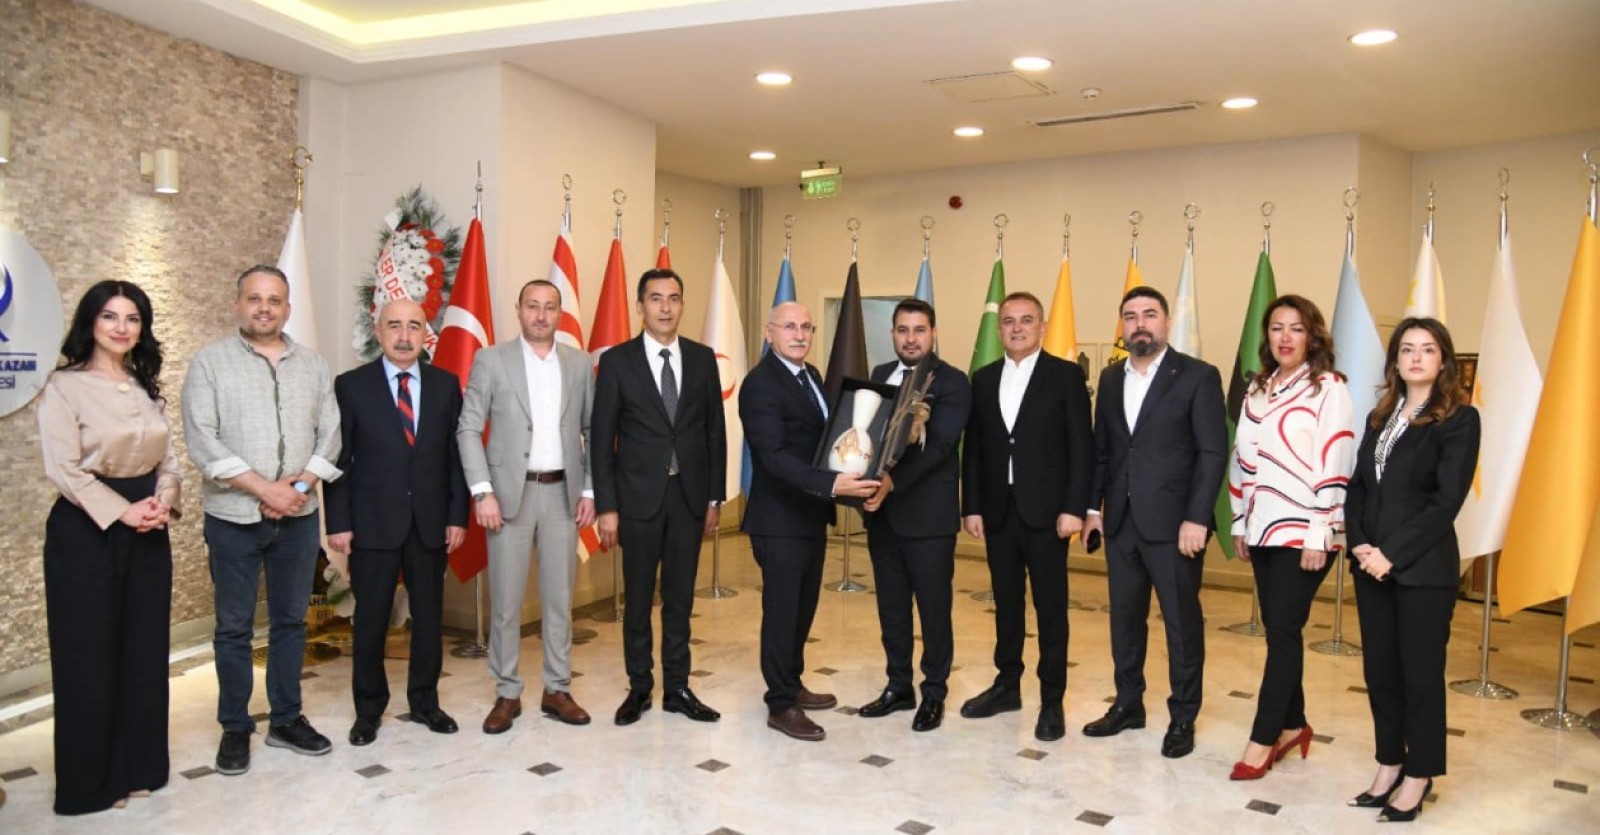 Kahramankazan Sanayici ve İş Adamları Derneği (KASİAD) Başkanı Ali Güzey ve yönetimi,  Başkanımız Sn. Selim Çırpanoğlu’nu makamında ziyaret edip, yeni dönem için başarı dileklerini ilettiler.